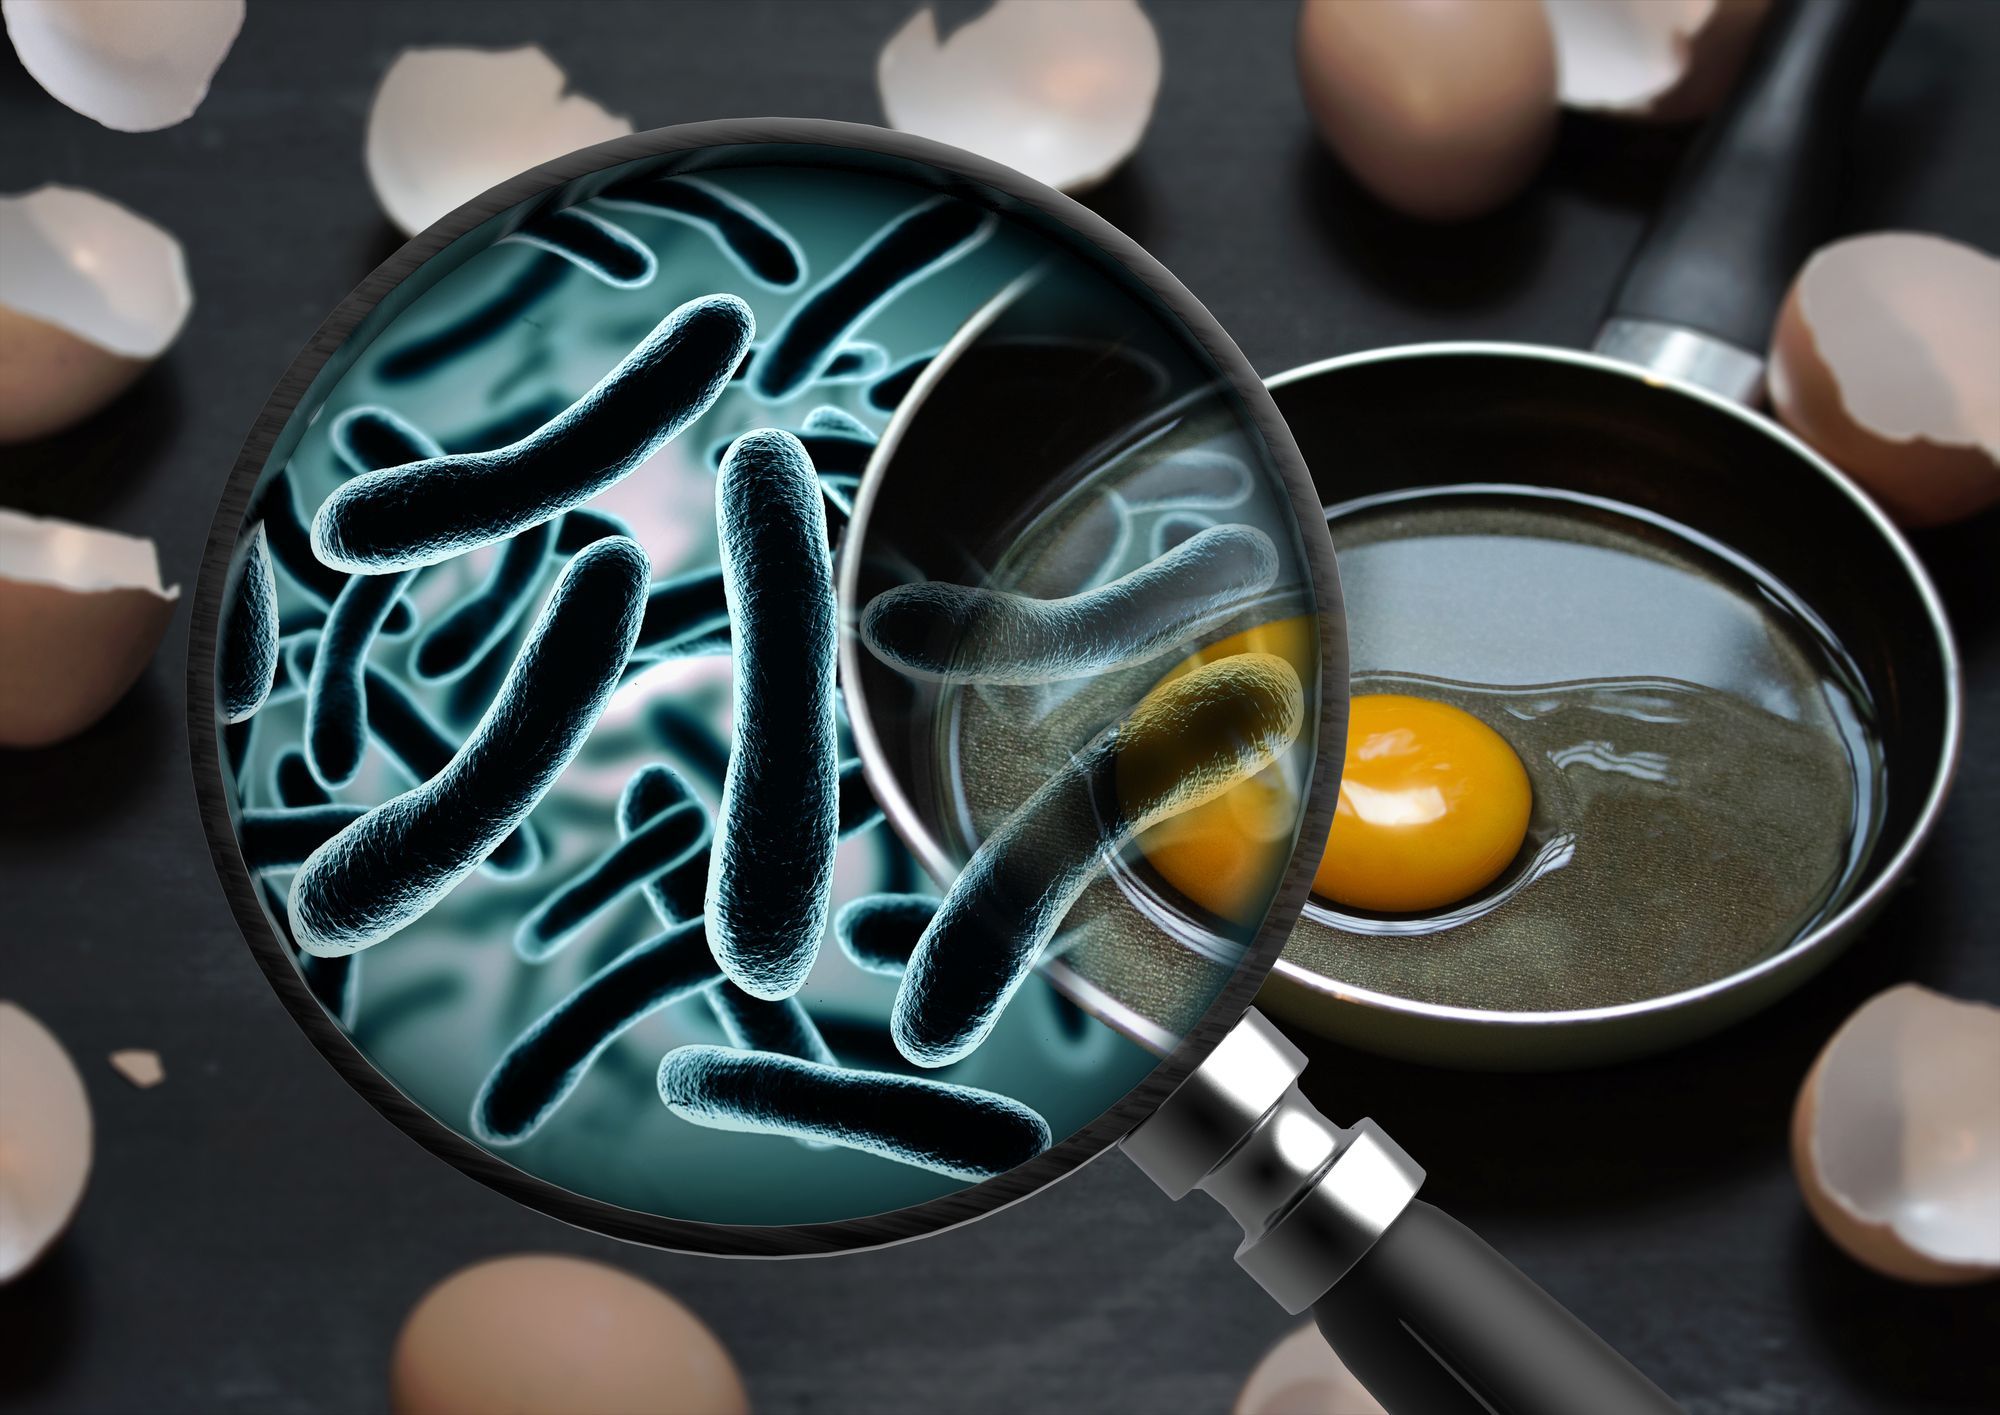 eggs with bacterial contamination regarding Canada recalls 